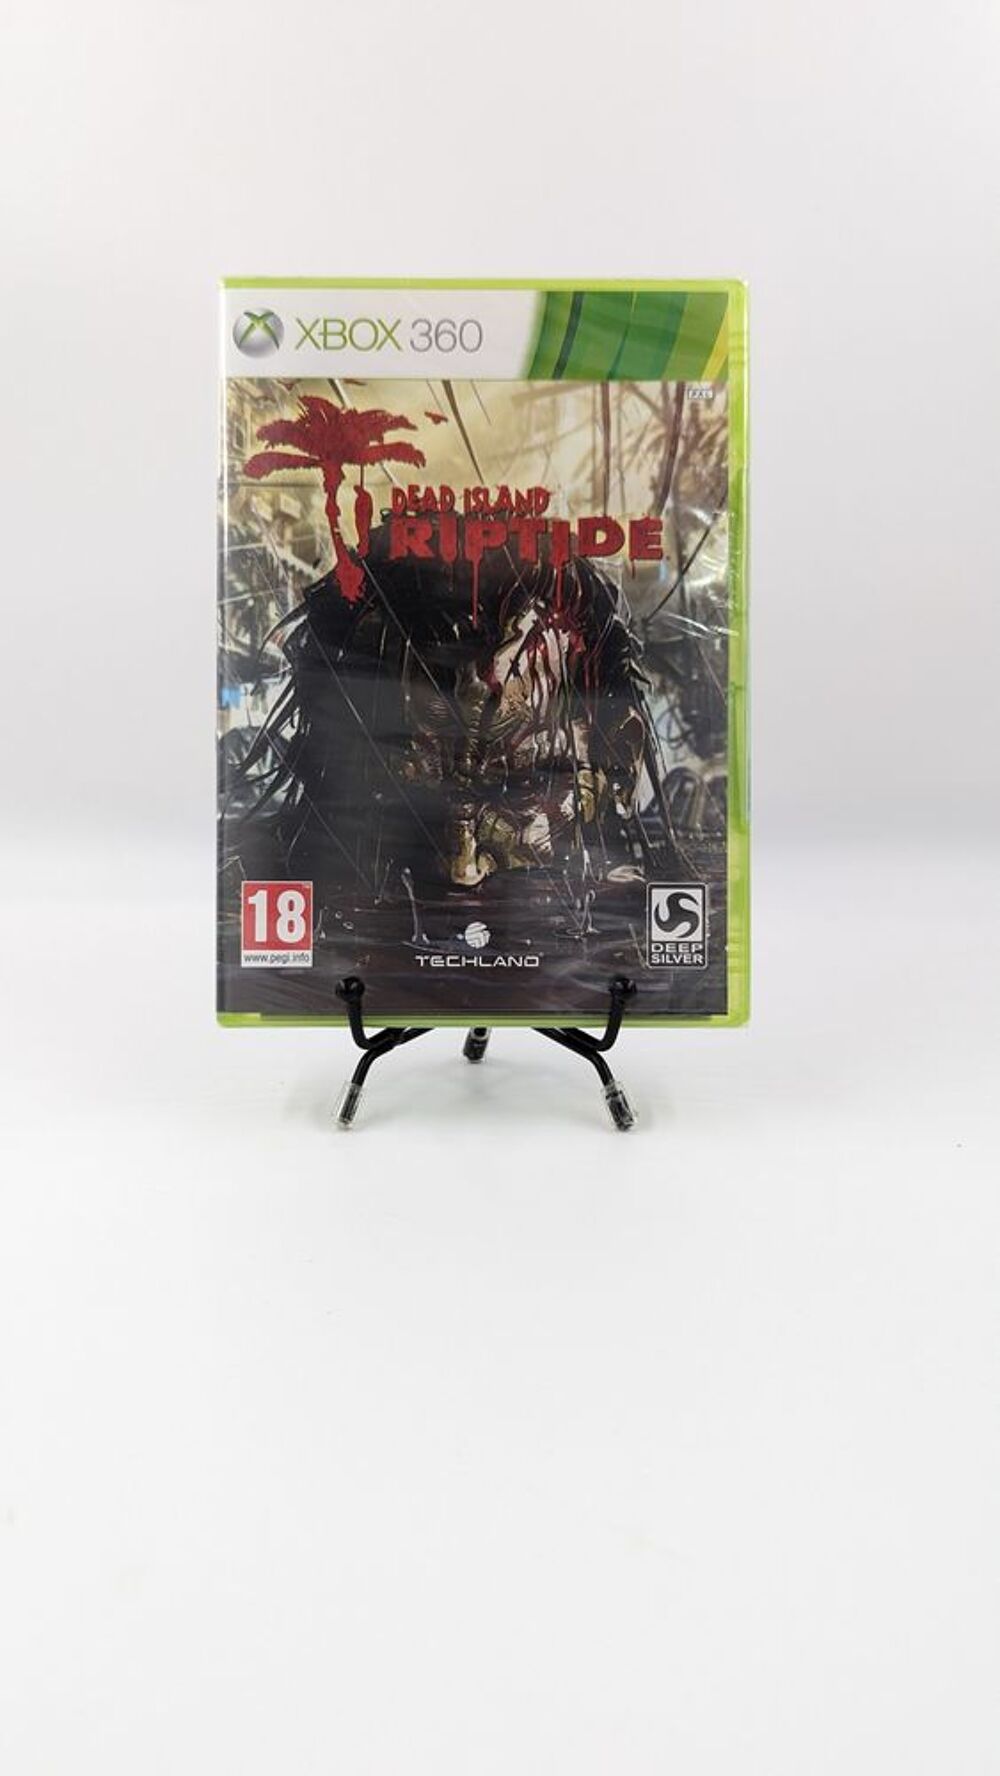 Jeu Xbox 360 Dead Island Riptide neuf sous blister Consoles et jeux vidos